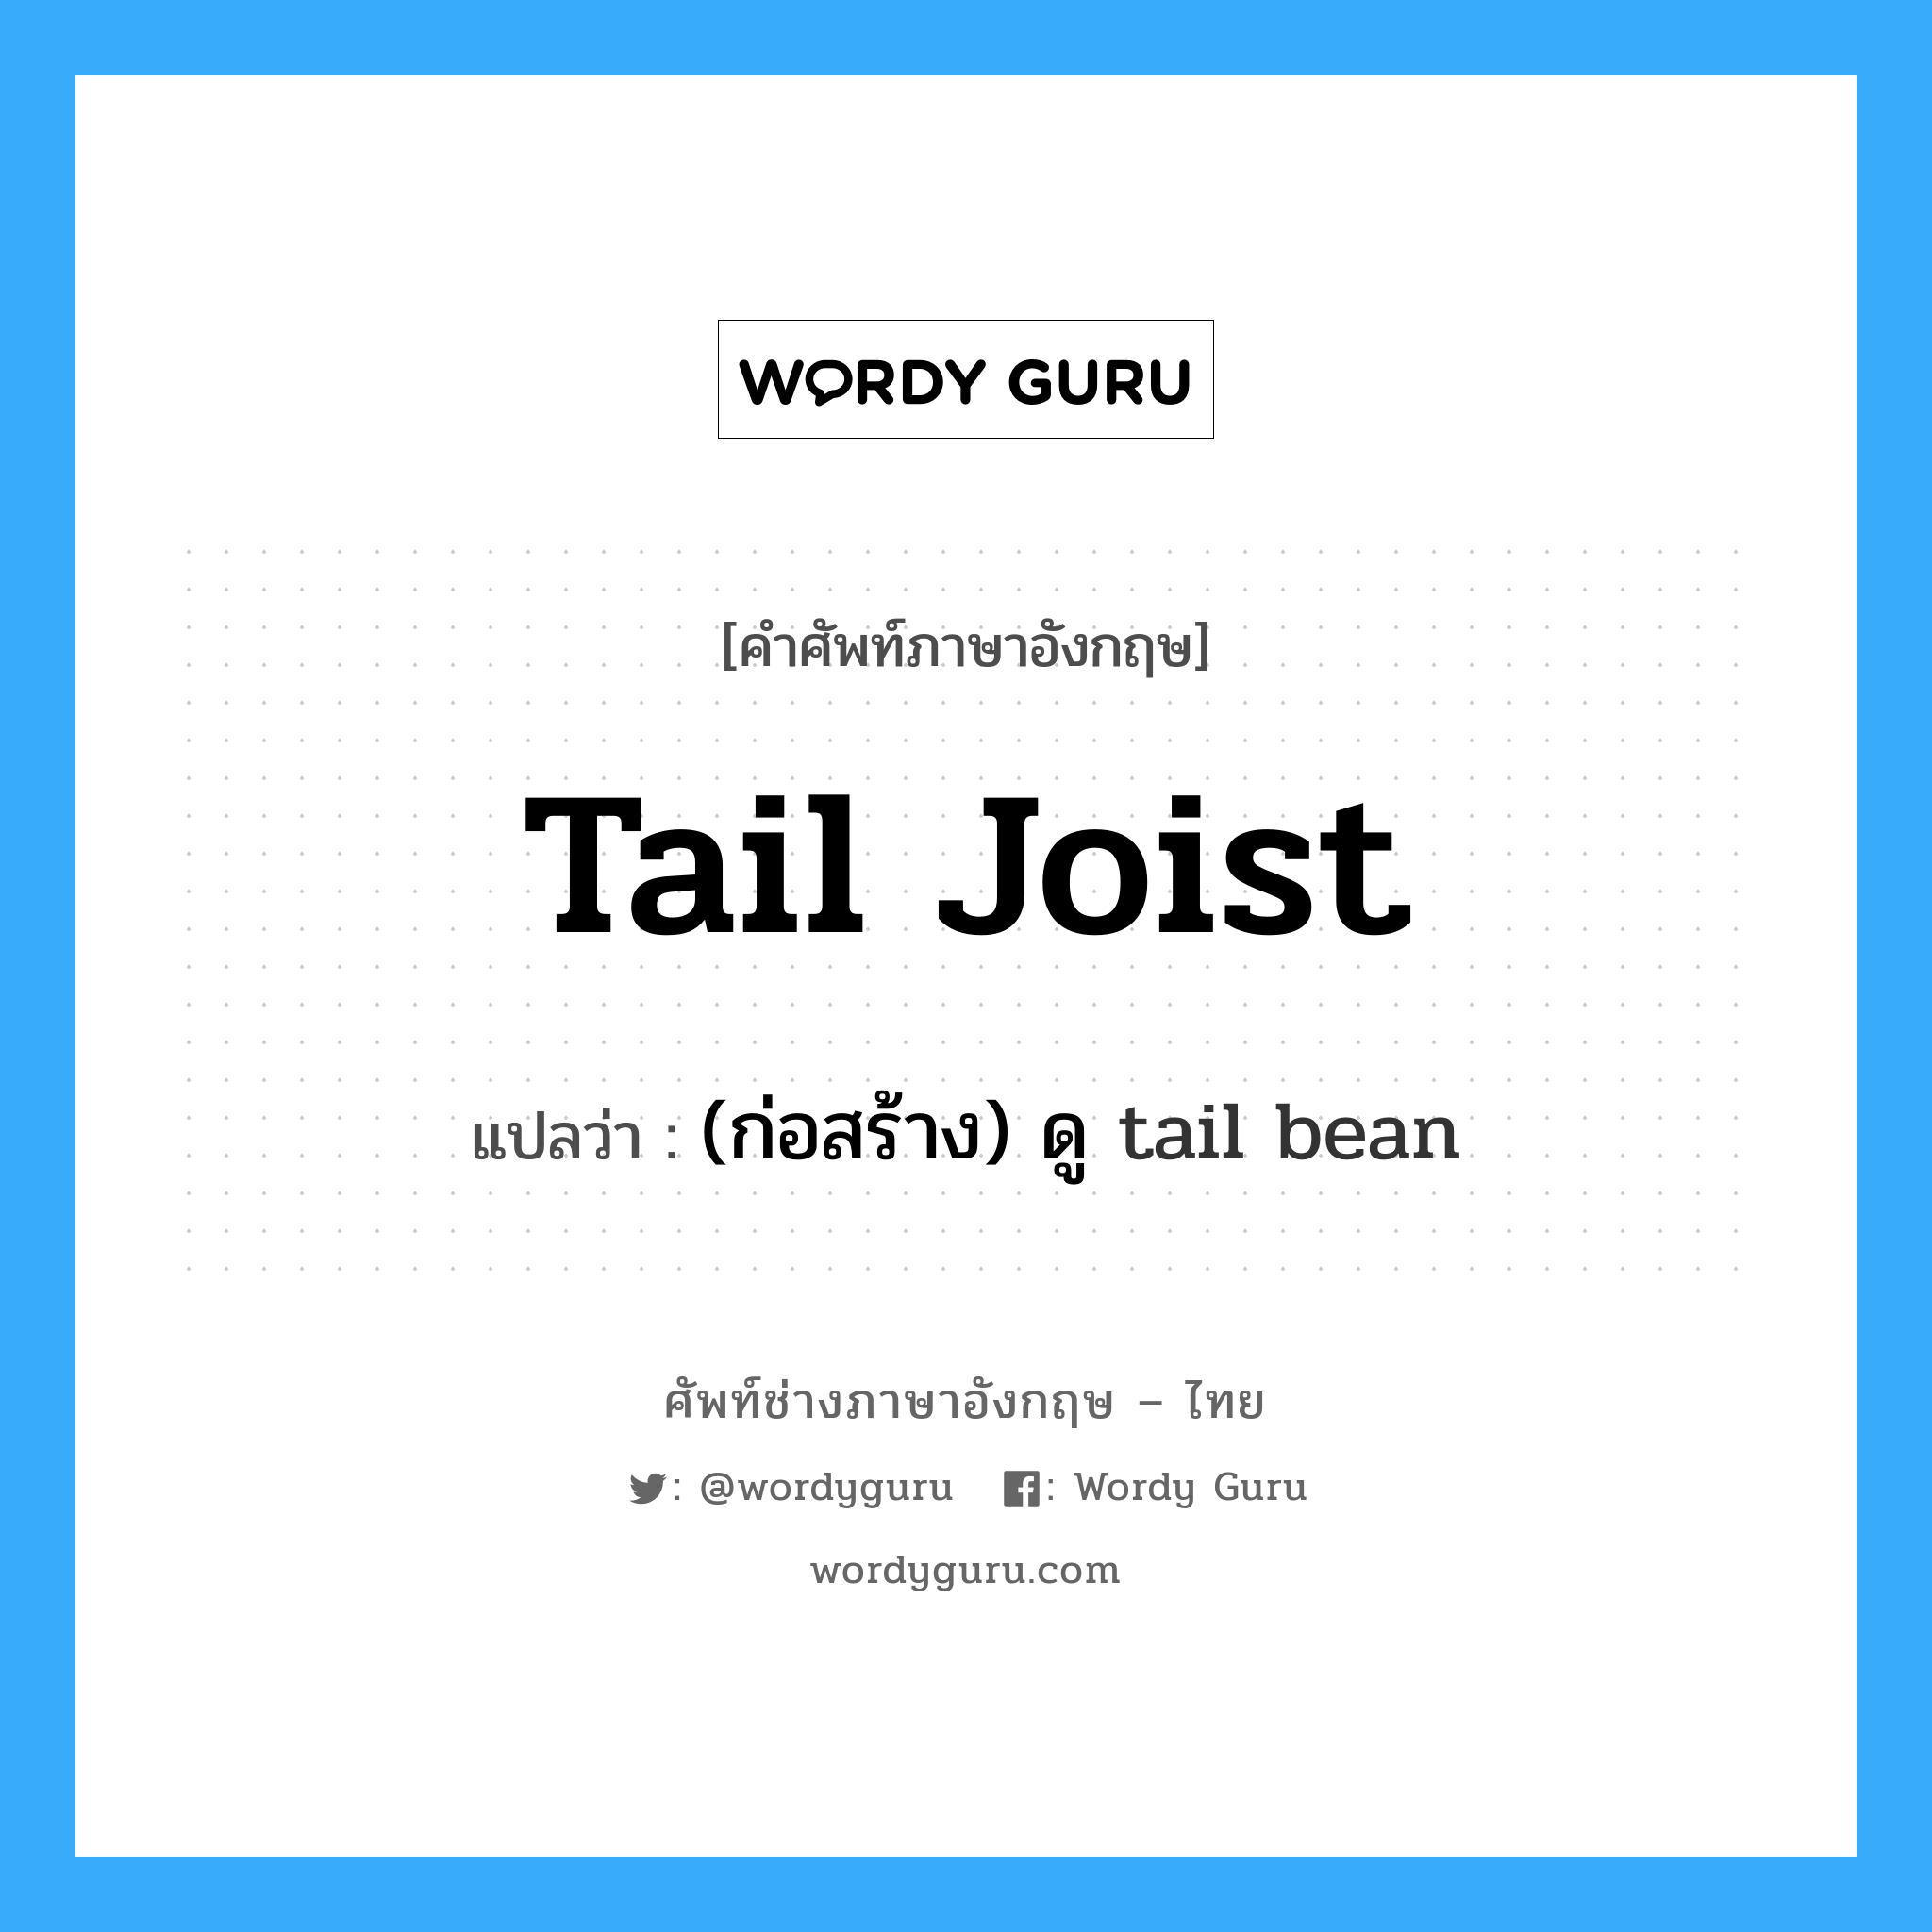 (ก่อสร้าง) ดู tail bean ภาษาอังกฤษ?, คำศัพท์ช่างภาษาอังกฤษ - ไทย (ก่อสร้าง) ดู tail bean คำศัพท์ภาษาอังกฤษ (ก่อสร้าง) ดู tail bean แปลว่า tail joist